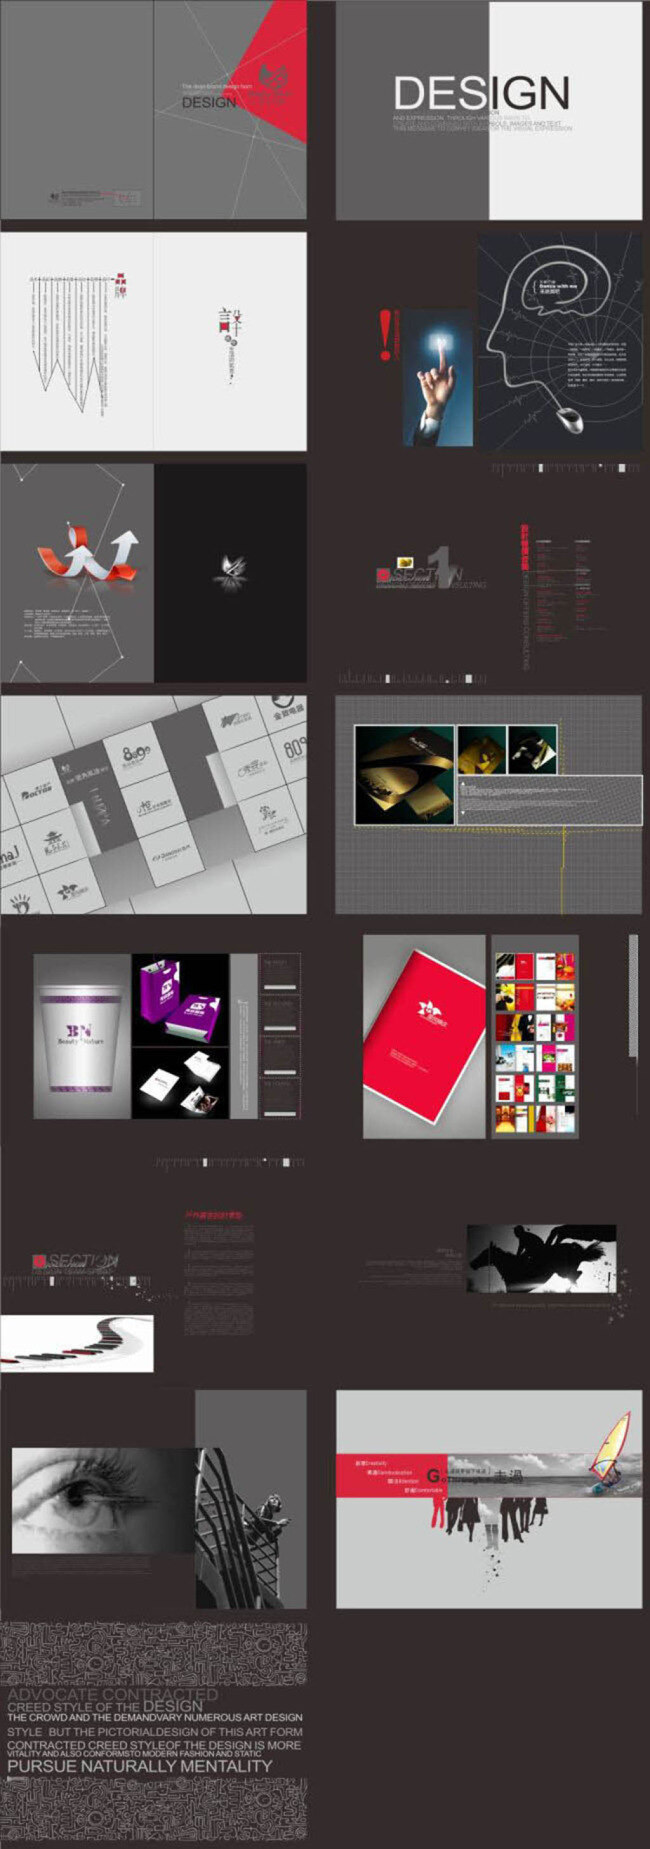 设计公司画册 cdr素材 创意 企业 画册设计 宣传画册设计 企业画册设计 产品画册设计 黑色